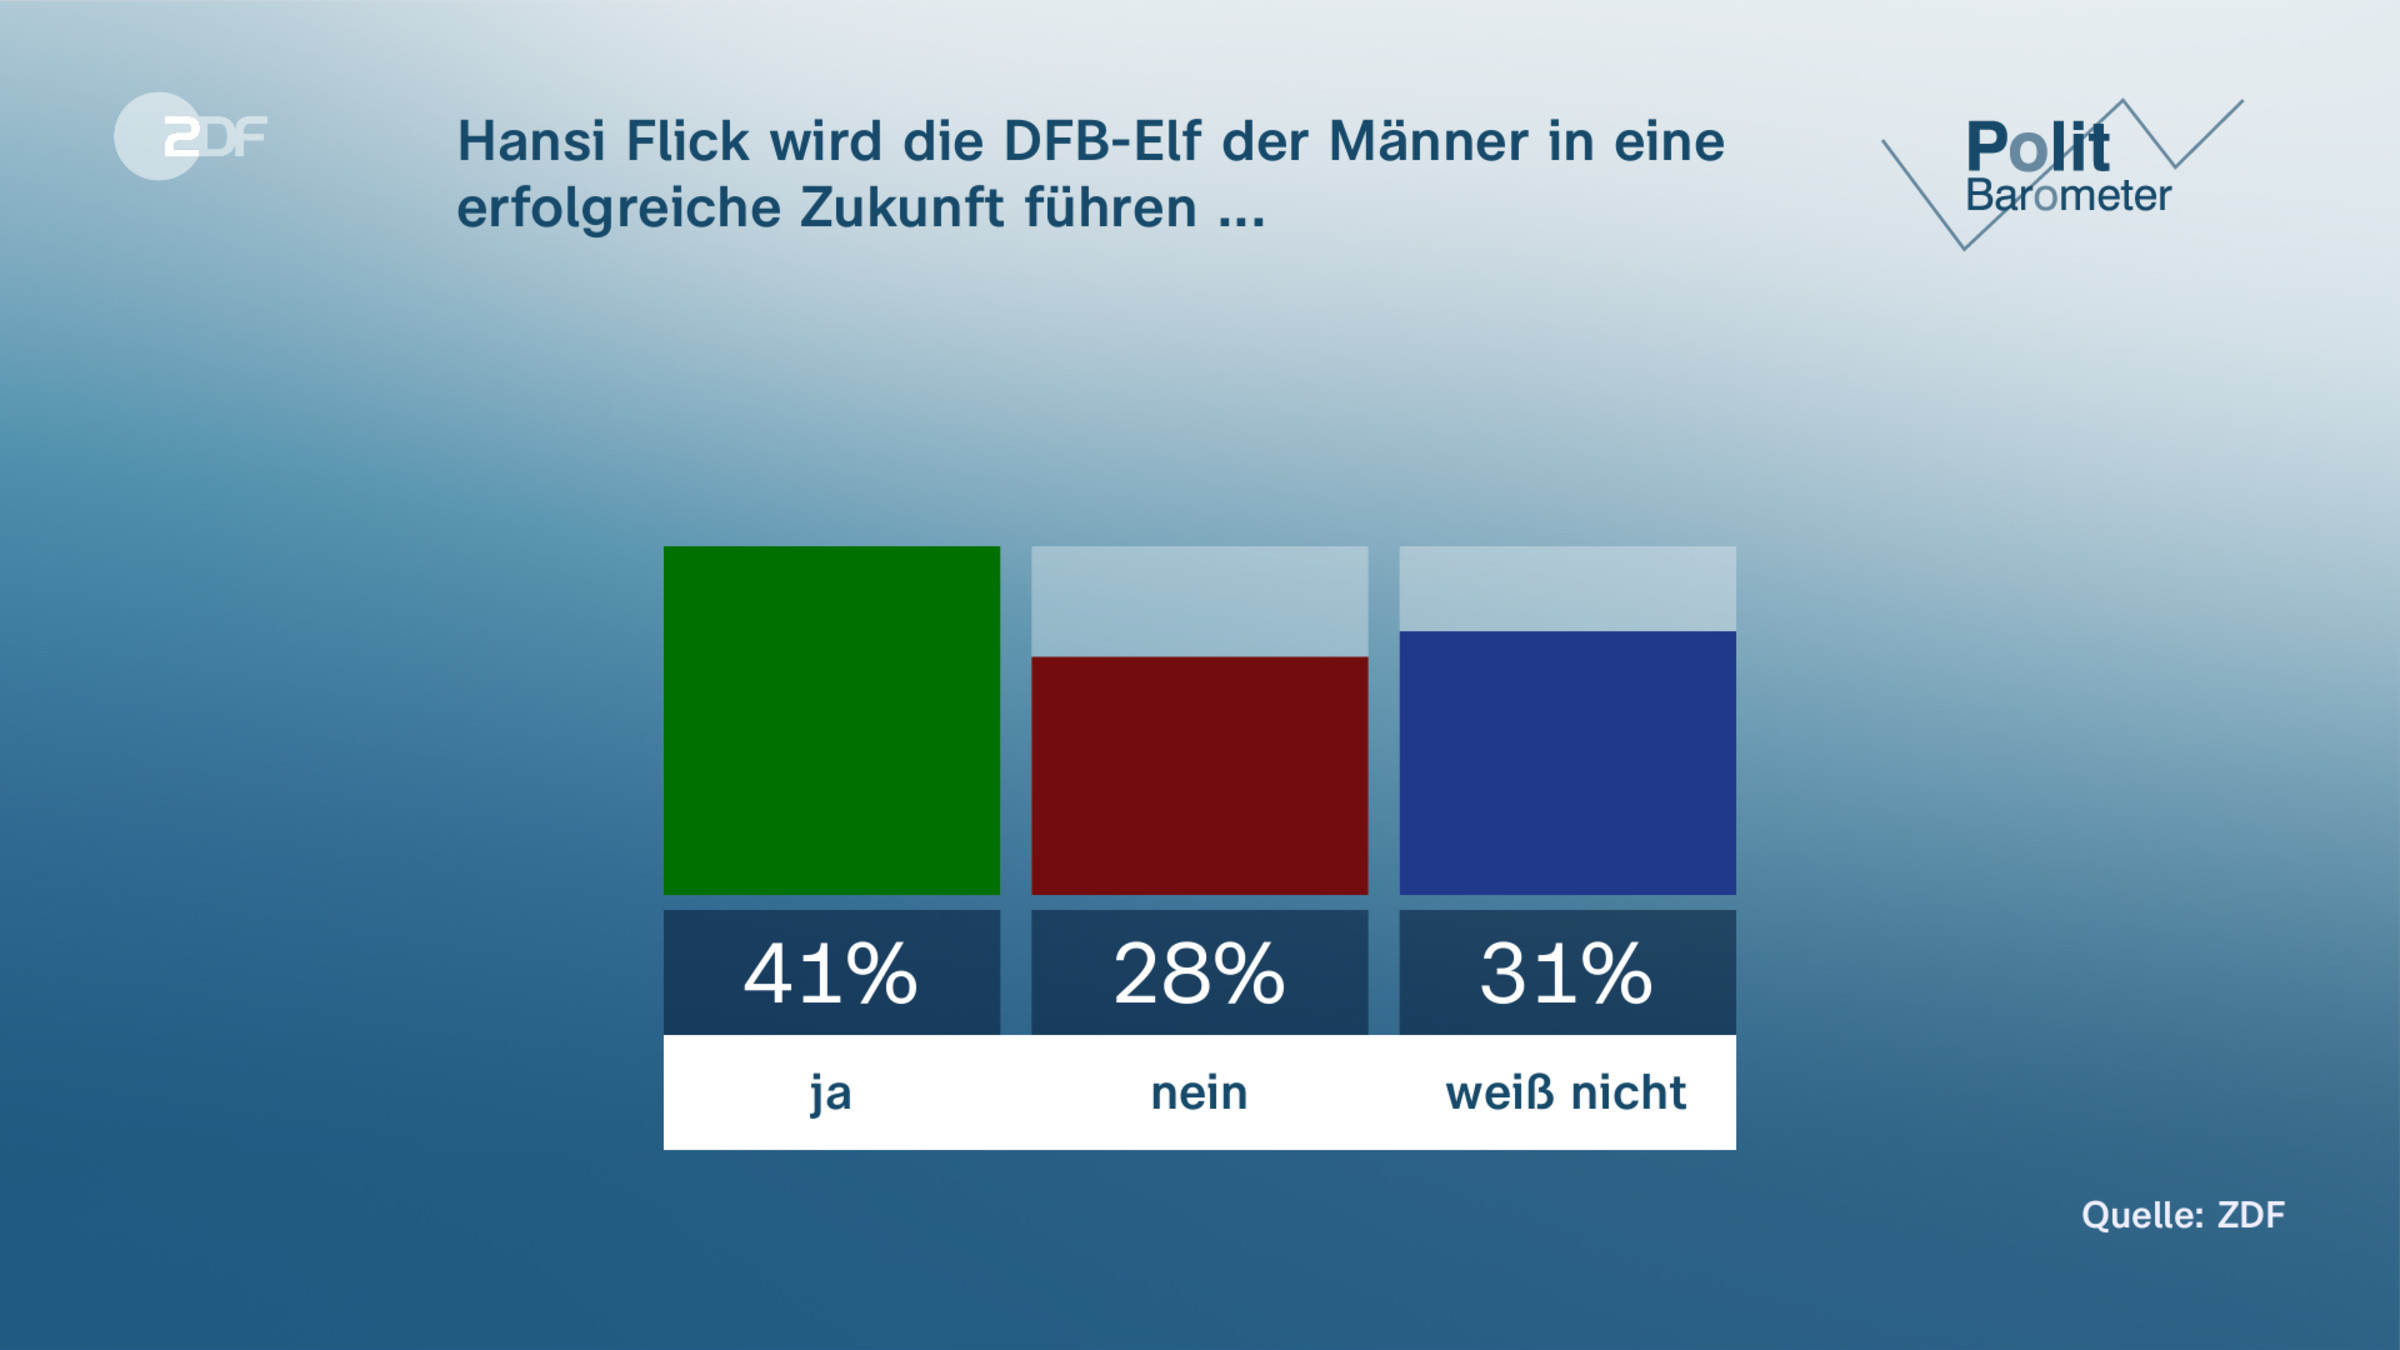 Hansi Flick wird die DFB-Elf der Männer in eine erfolgreiche Zukunft führen ...